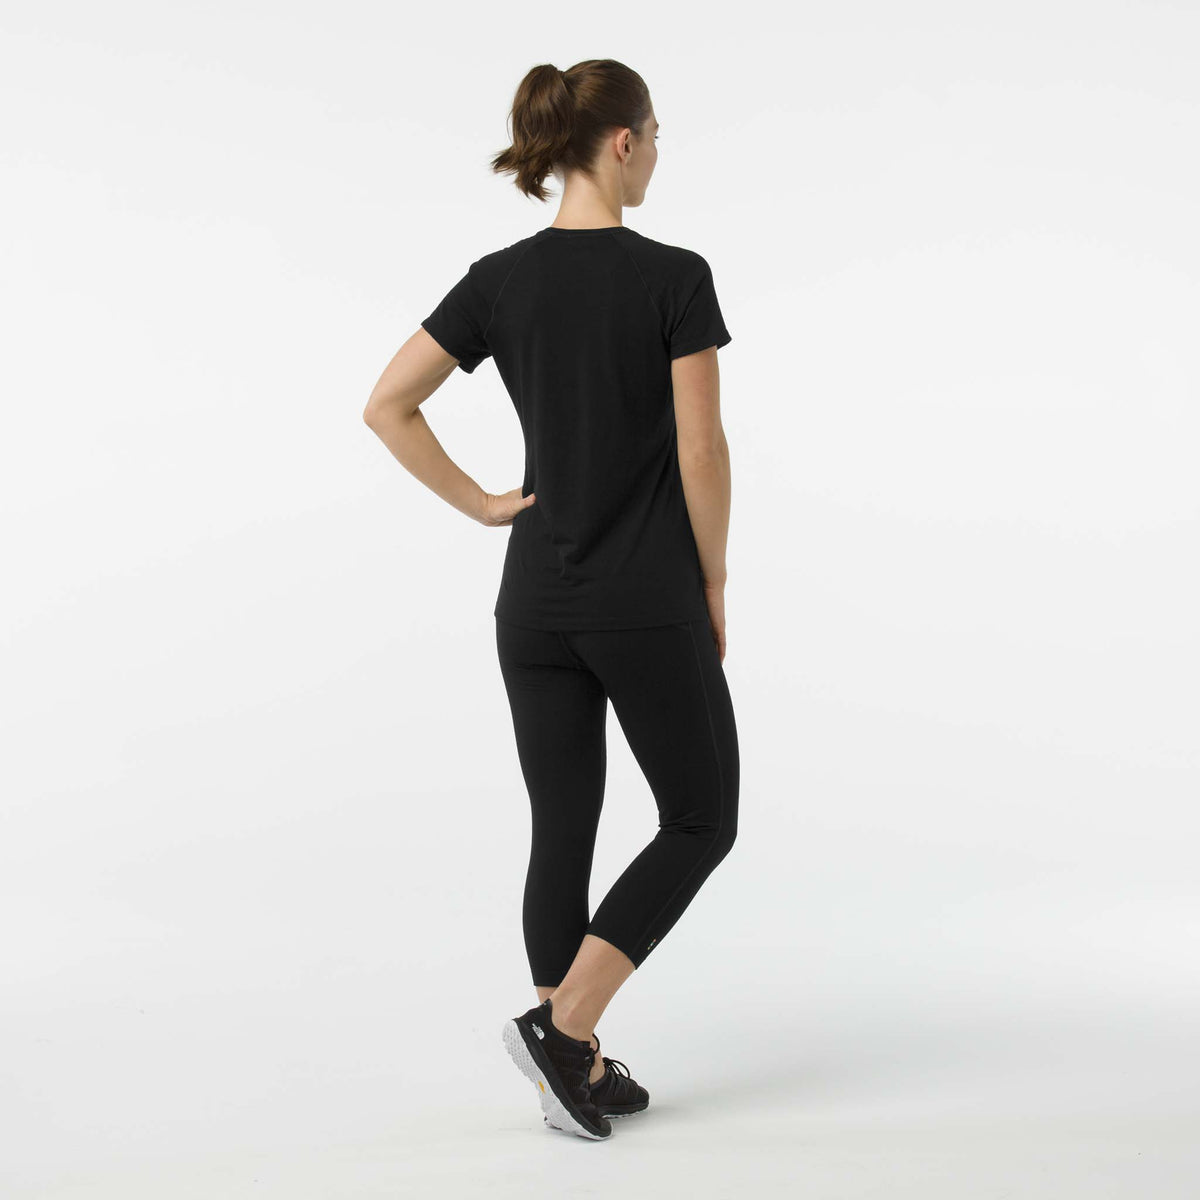 Smartwool Merino 150 T-shirt de base à manches courtes noir femme dos